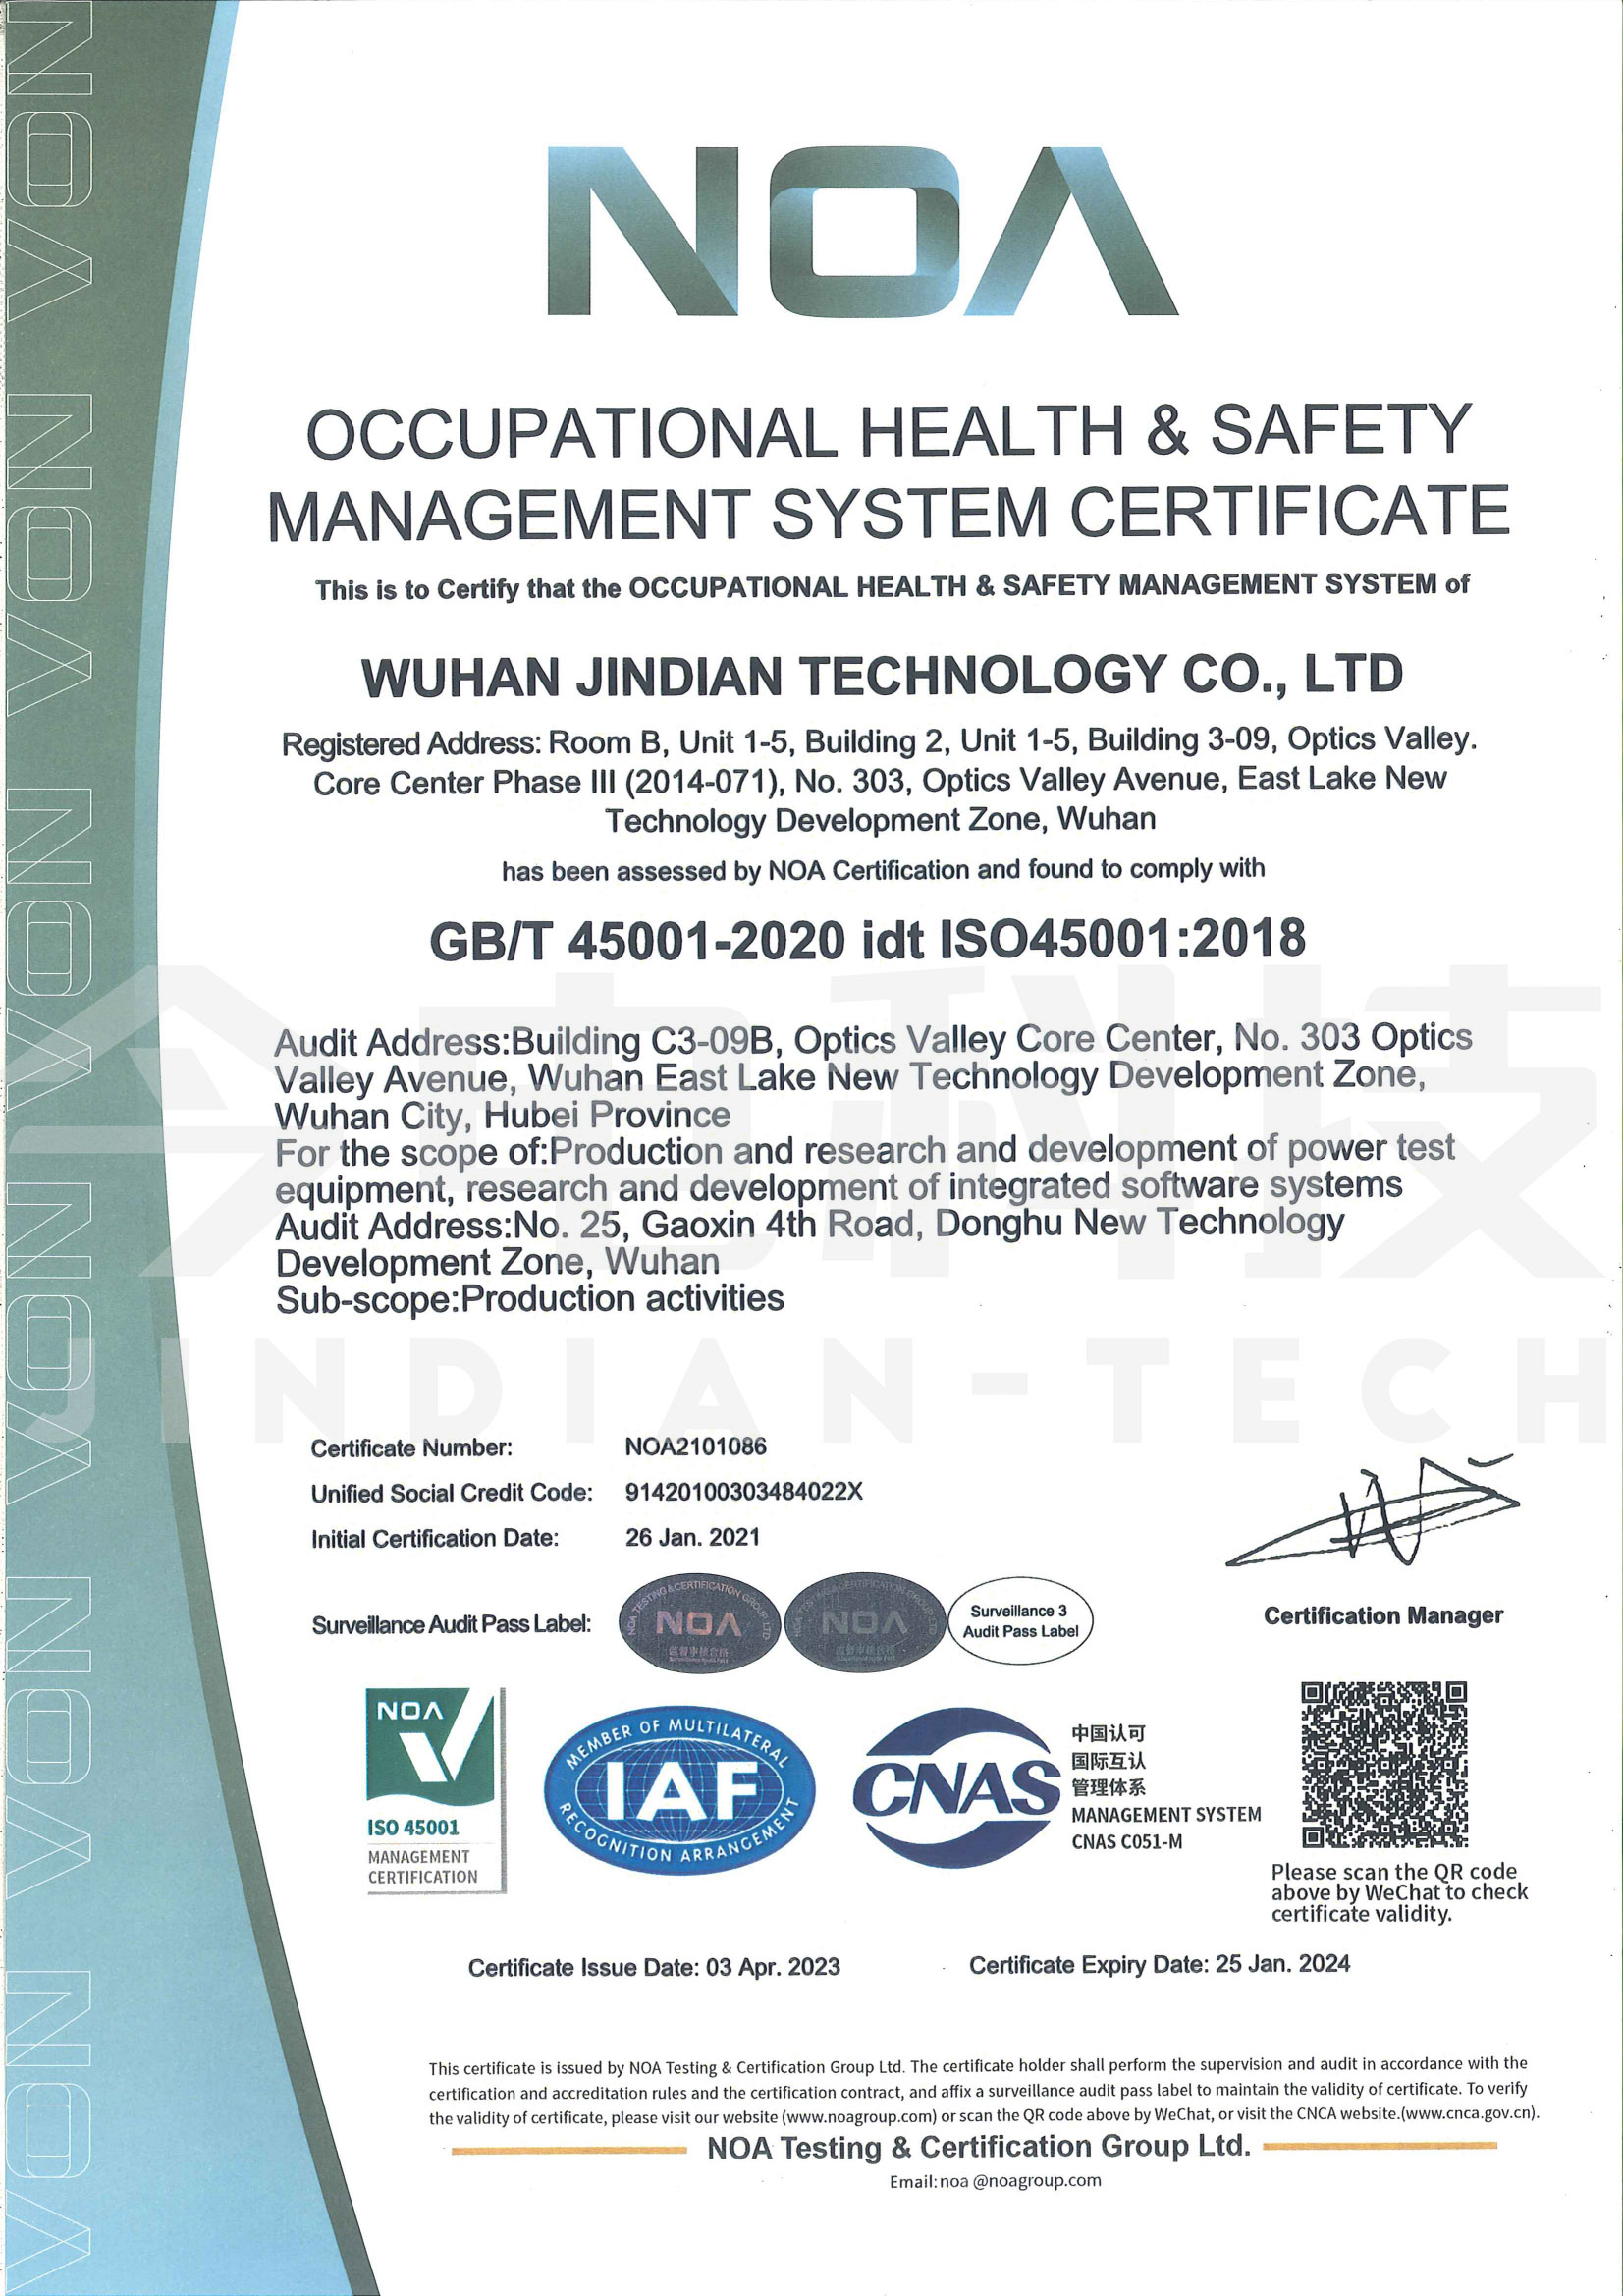  职业健康安全管理体系证书(英文版)